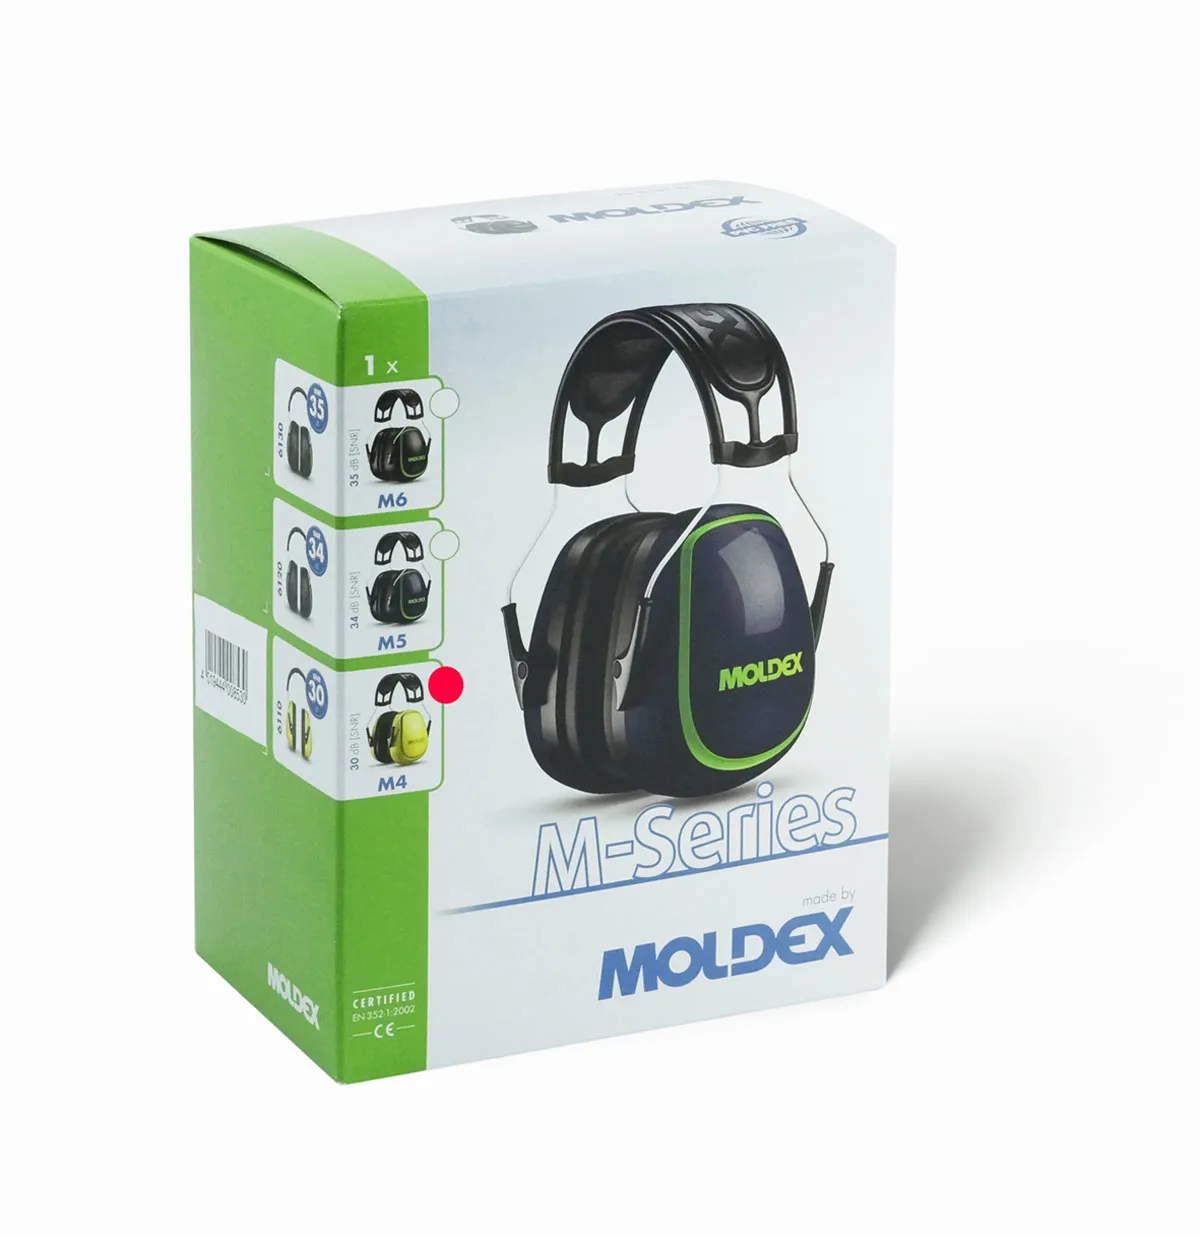 Gehörschutzkapsel Moldex 611001 M4